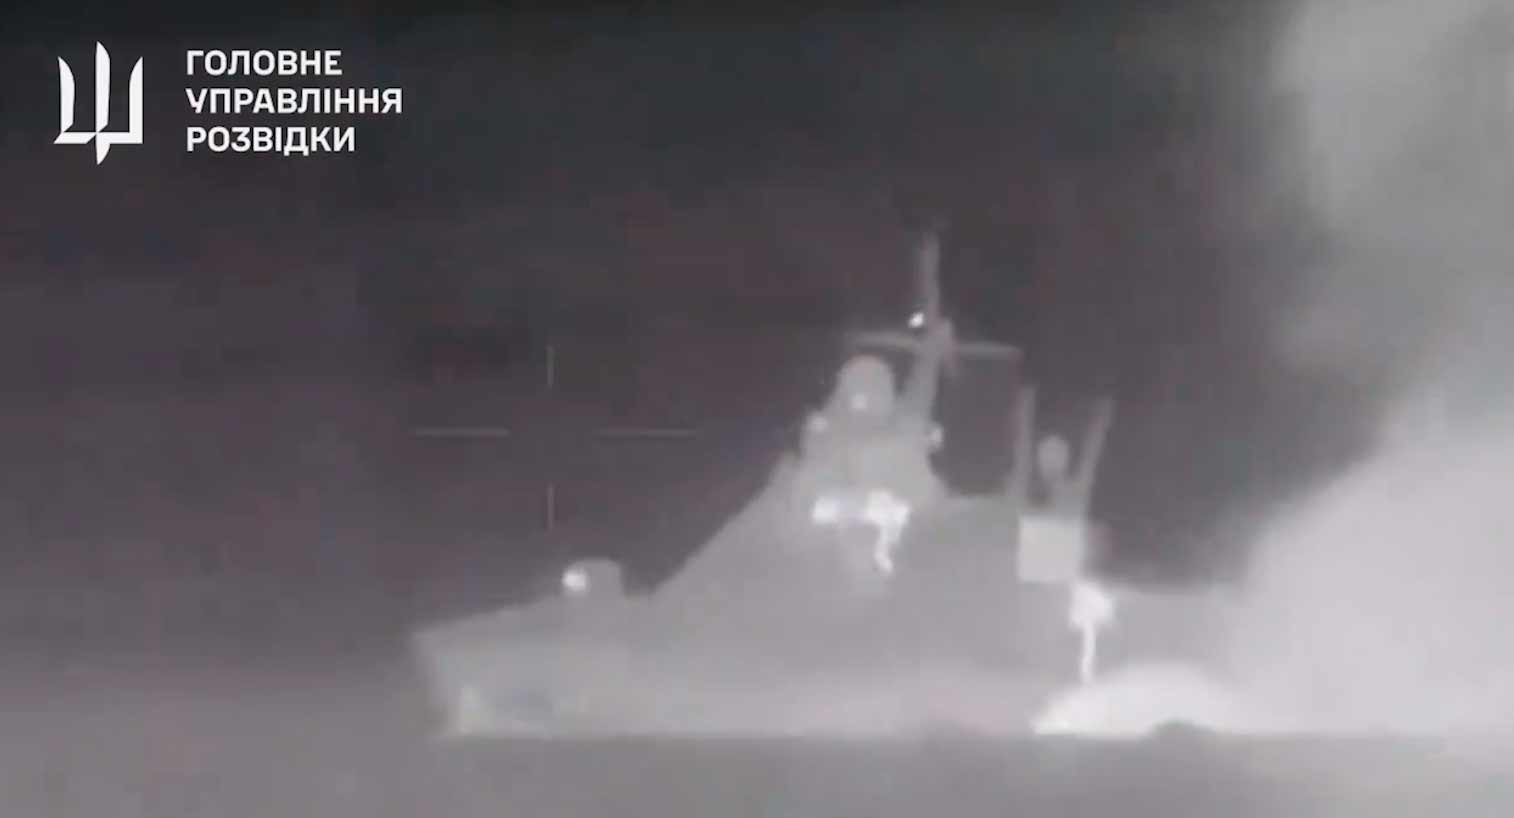 Video baru menunjukkan ledakan yang menenggelamkan kapal Rusia Sergey Kotov. Reproduksi Twitter @wartranslated